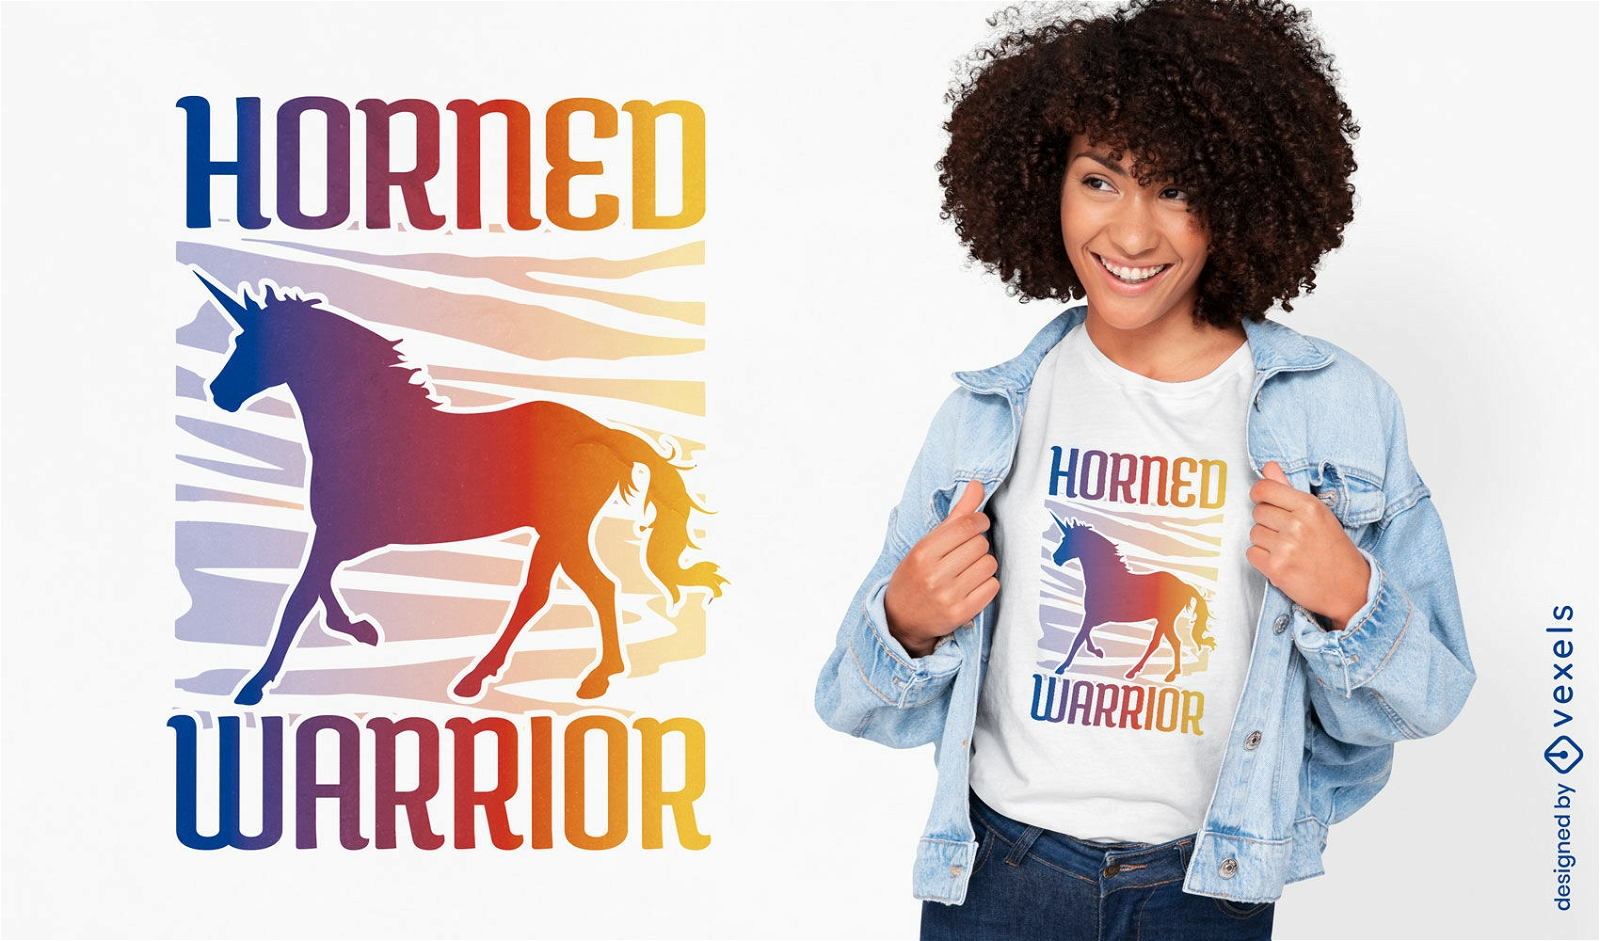 Horned warrior unicorn t-shirt design